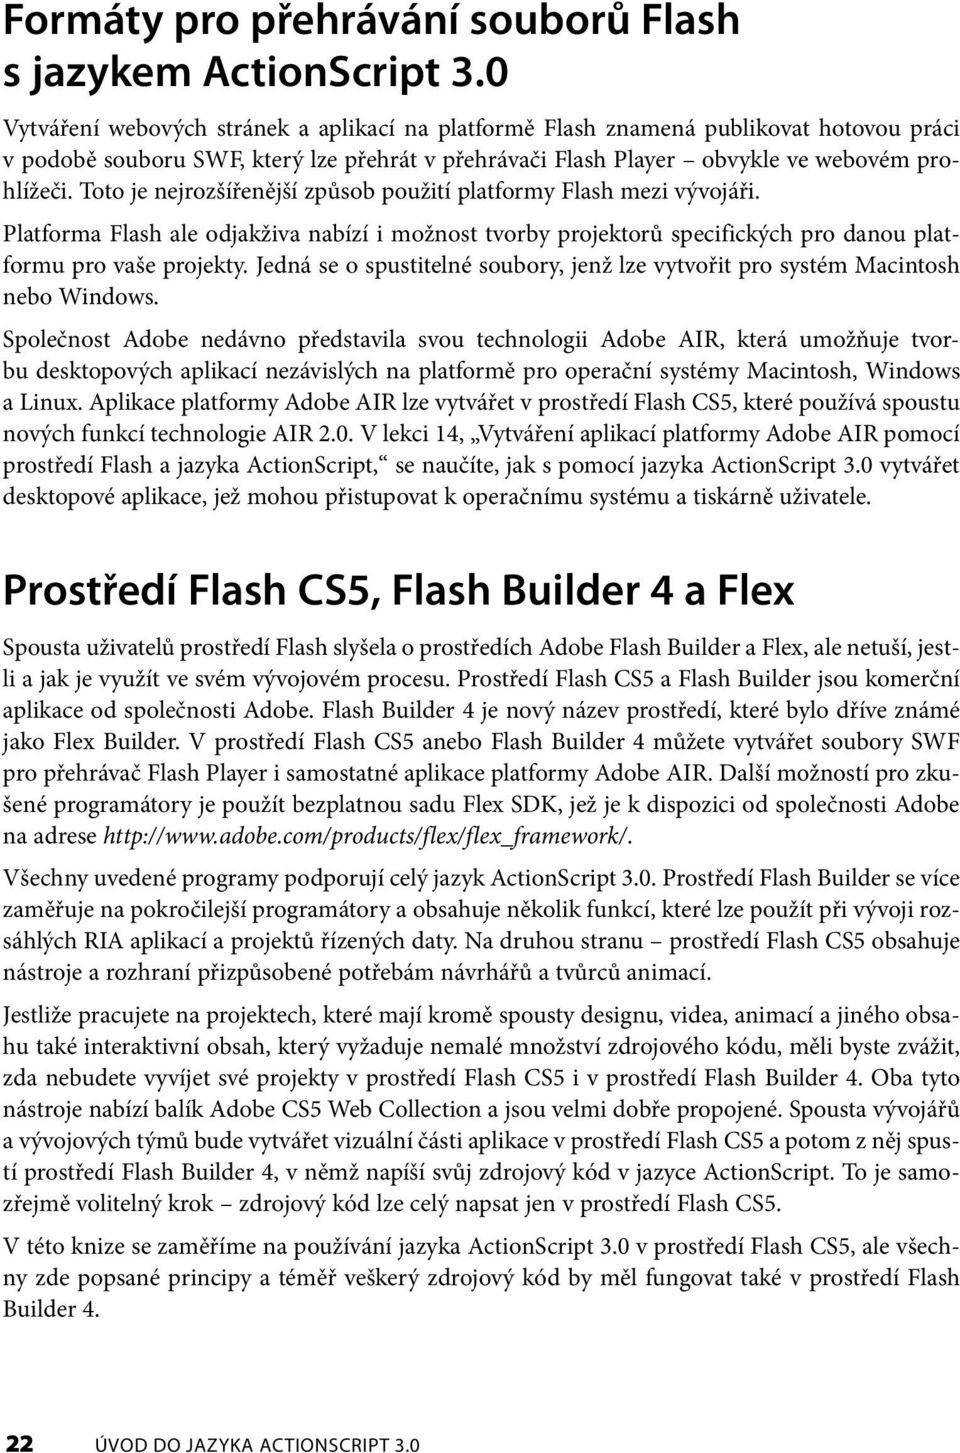 Toto je nejrozšířenější způsob použití platformy Flash mezi vývojáři. Platforma Flash ale odjakživa nabízí i možnost tvorby projektorů specifických pro danou platformu pro vaše projekty.